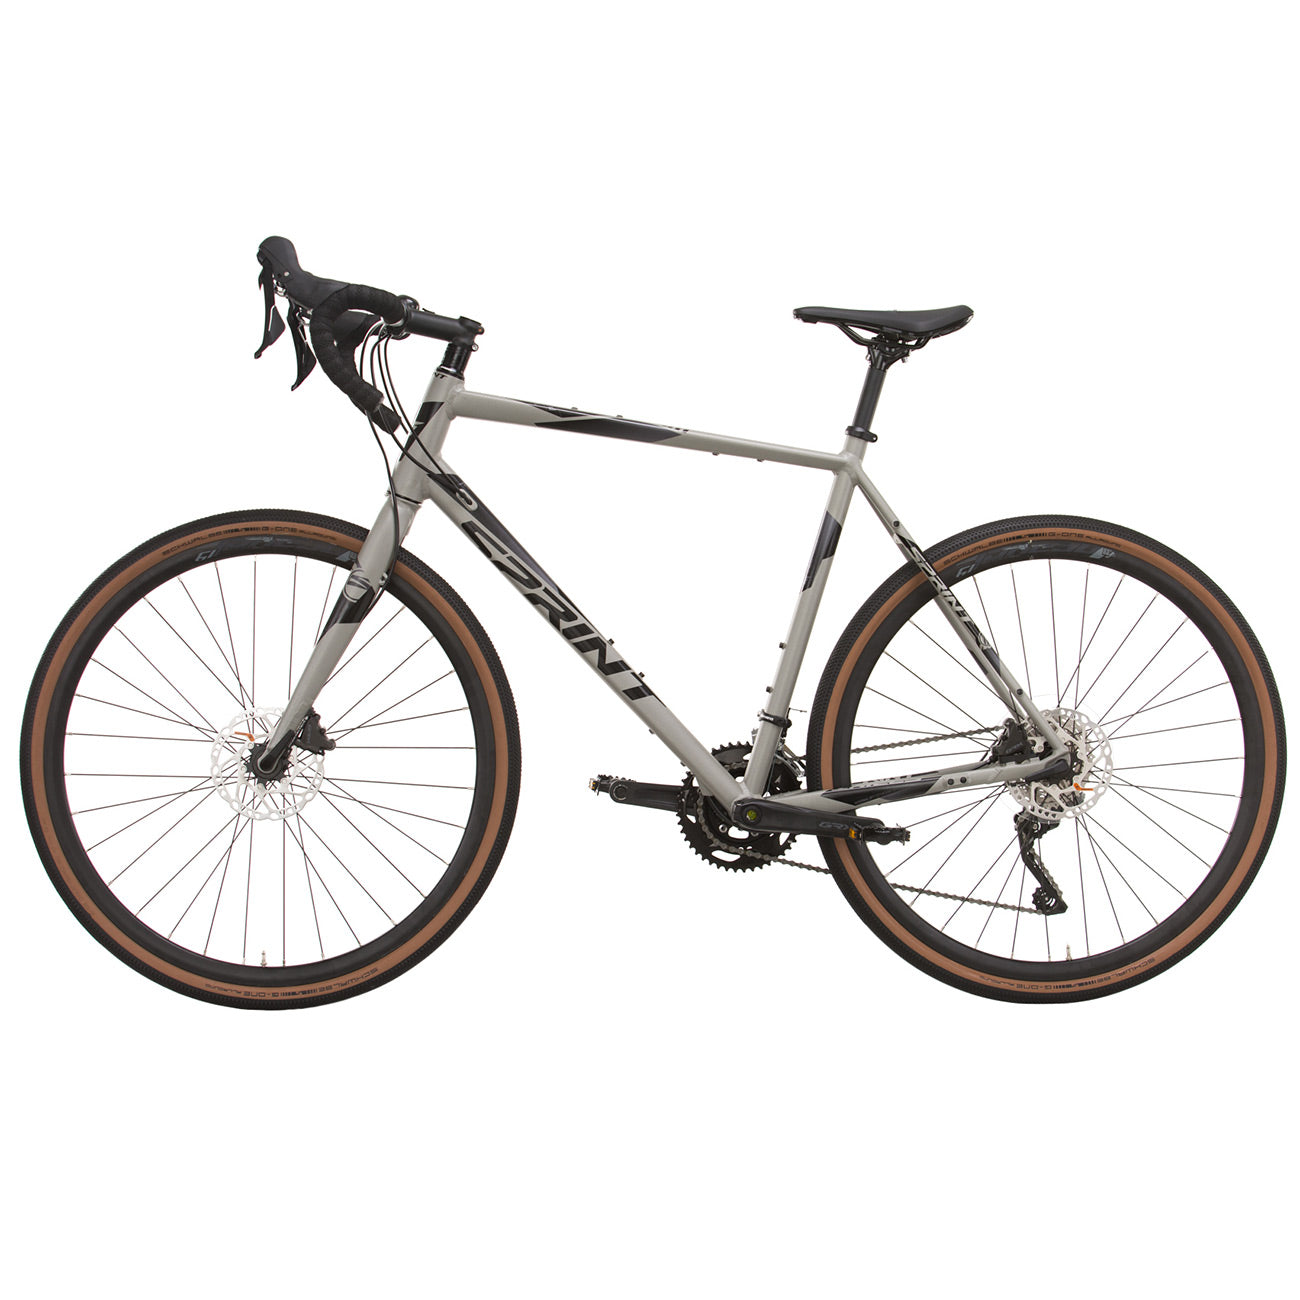 herren-gravel-bike-fahrrad-whister-shimano-grx-400-2-9-gang-52-56-cm-schwarz-grau-6